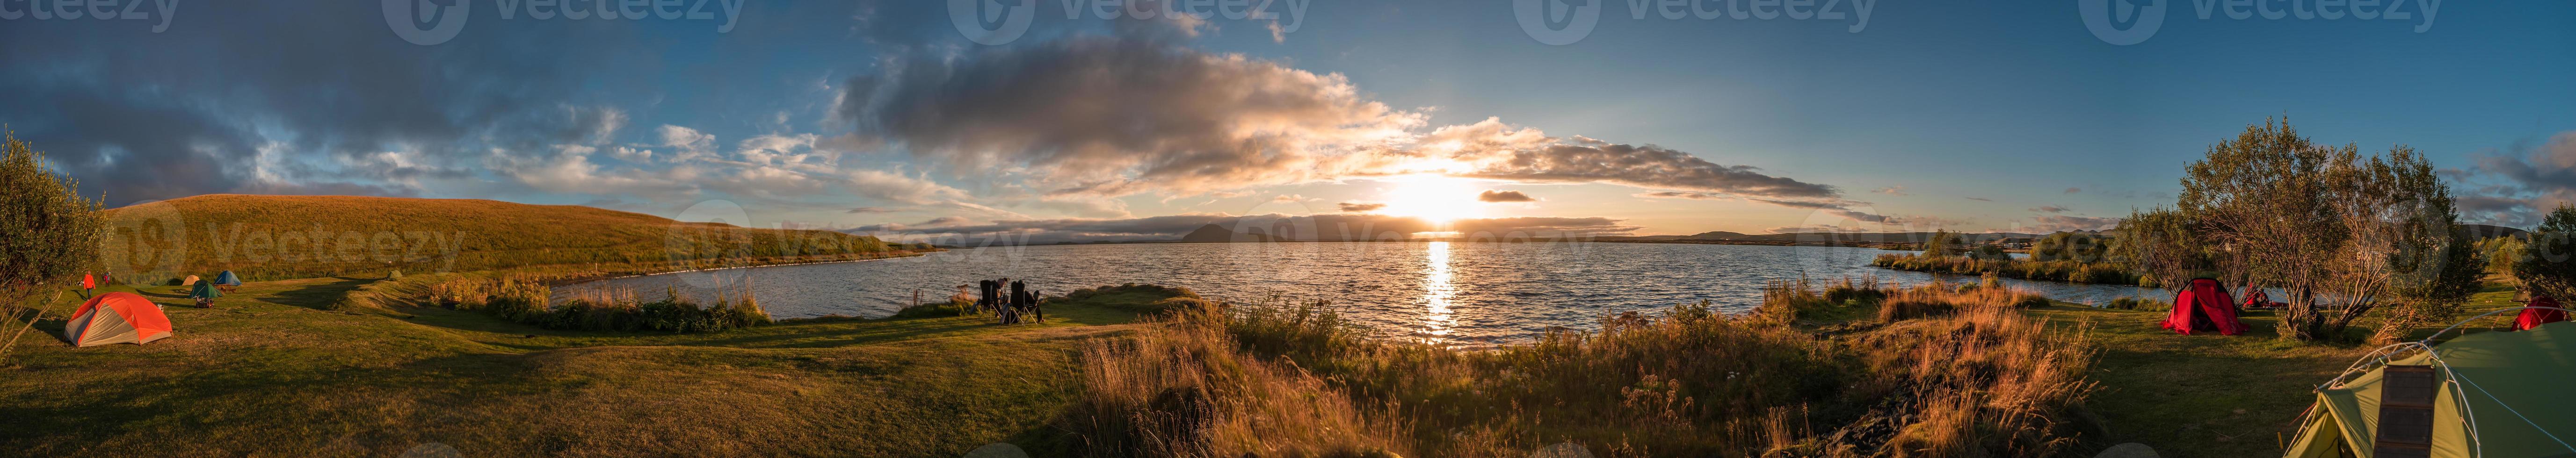 vista panorámica del lago myvatn en las tierras altas de islandia con tiendas de campaña en el camping durante la increíble puesta de sol en verano, islandia. foto